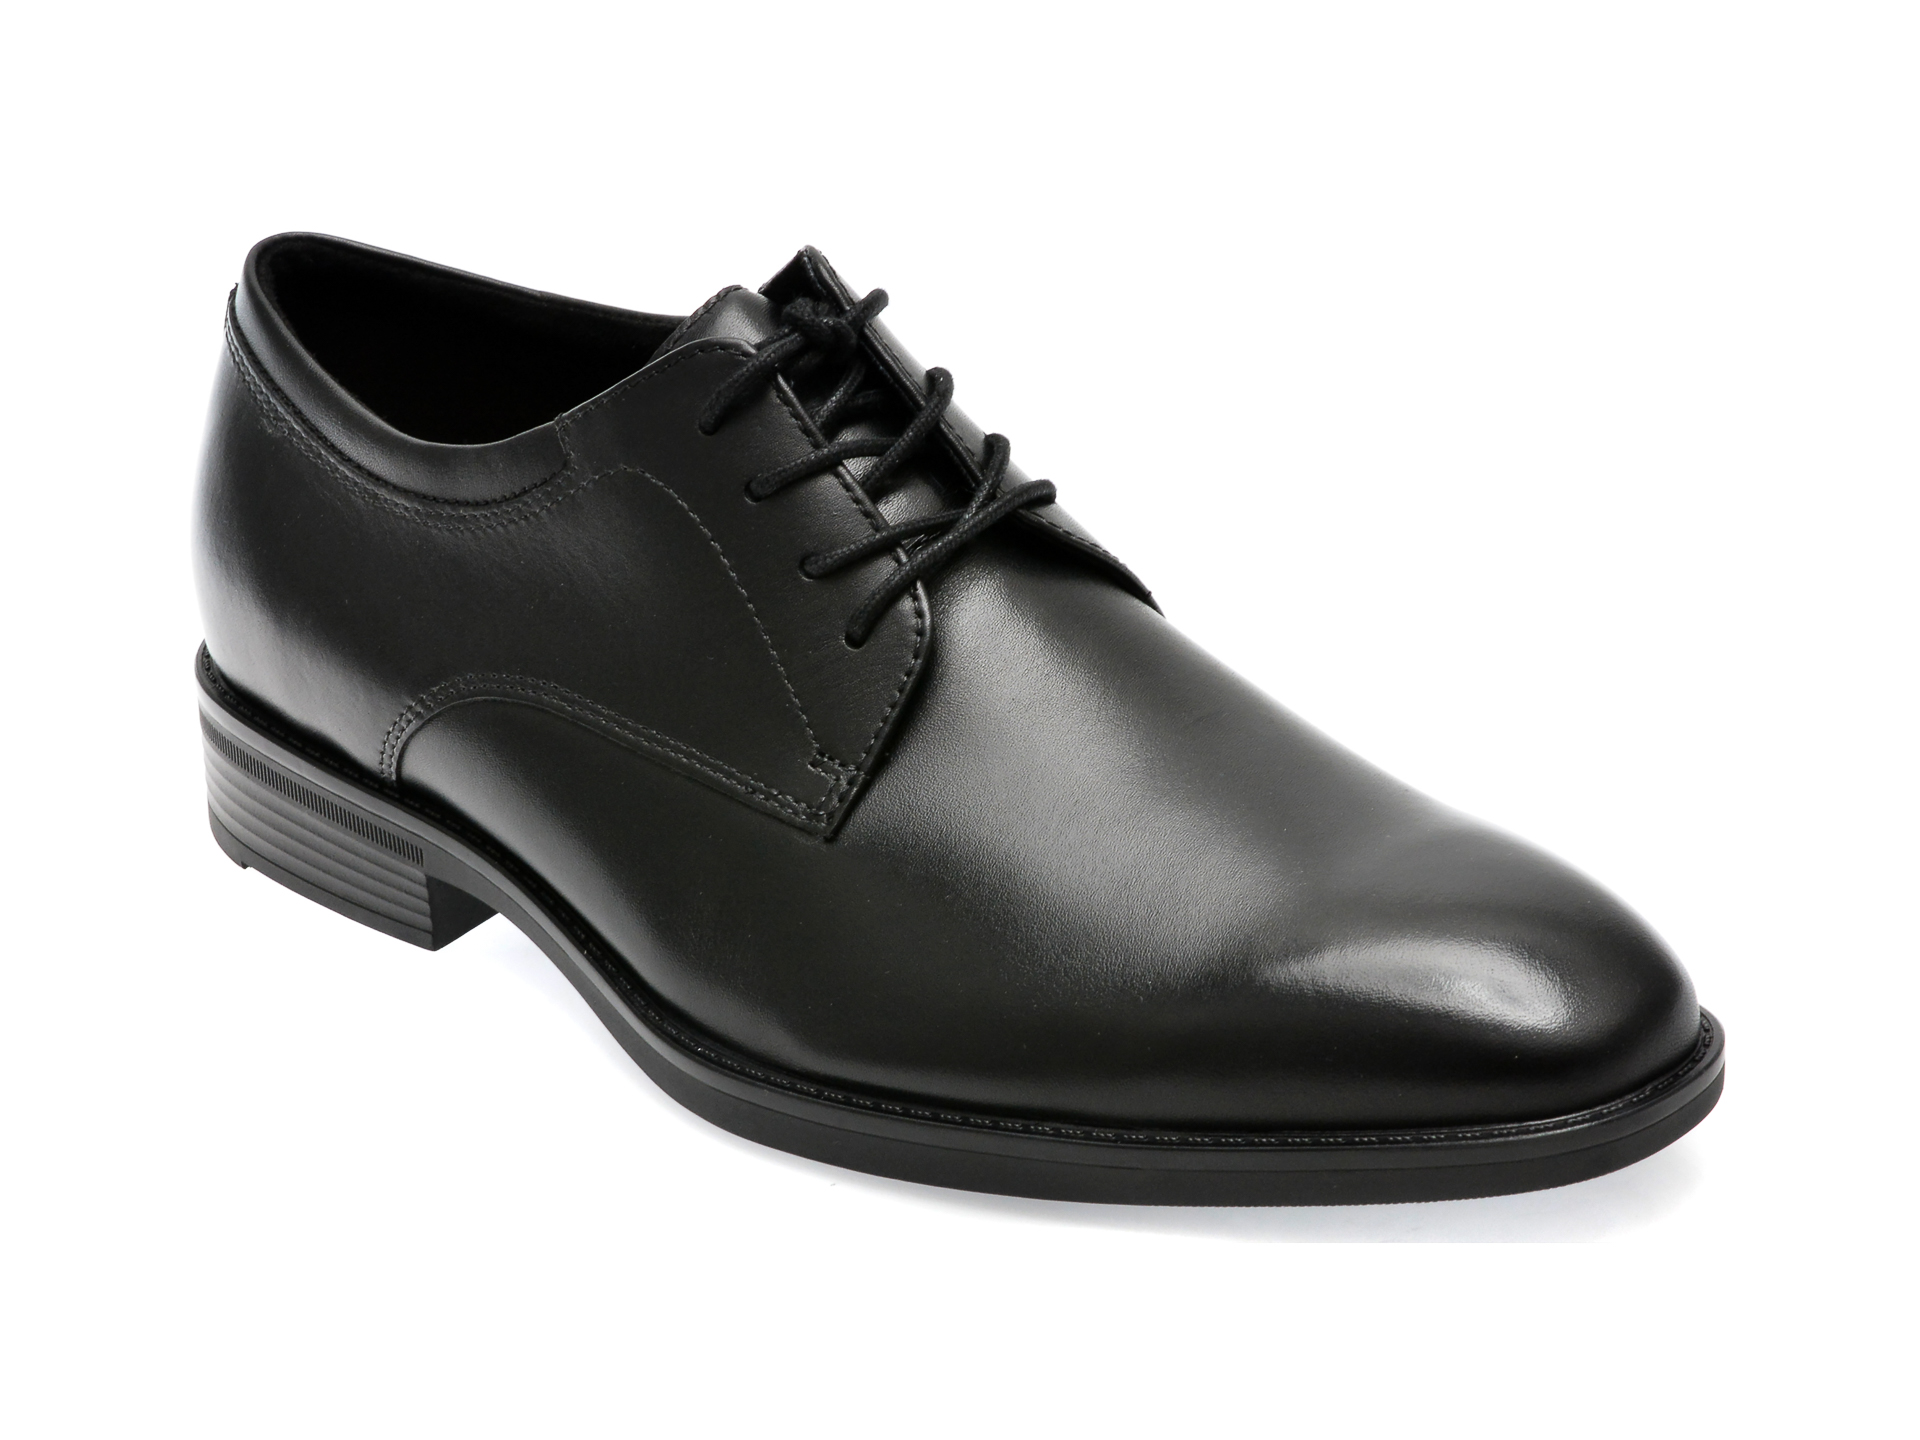 Pantofi ALDO negri, KEAGAN001, din piele naturala Aldo